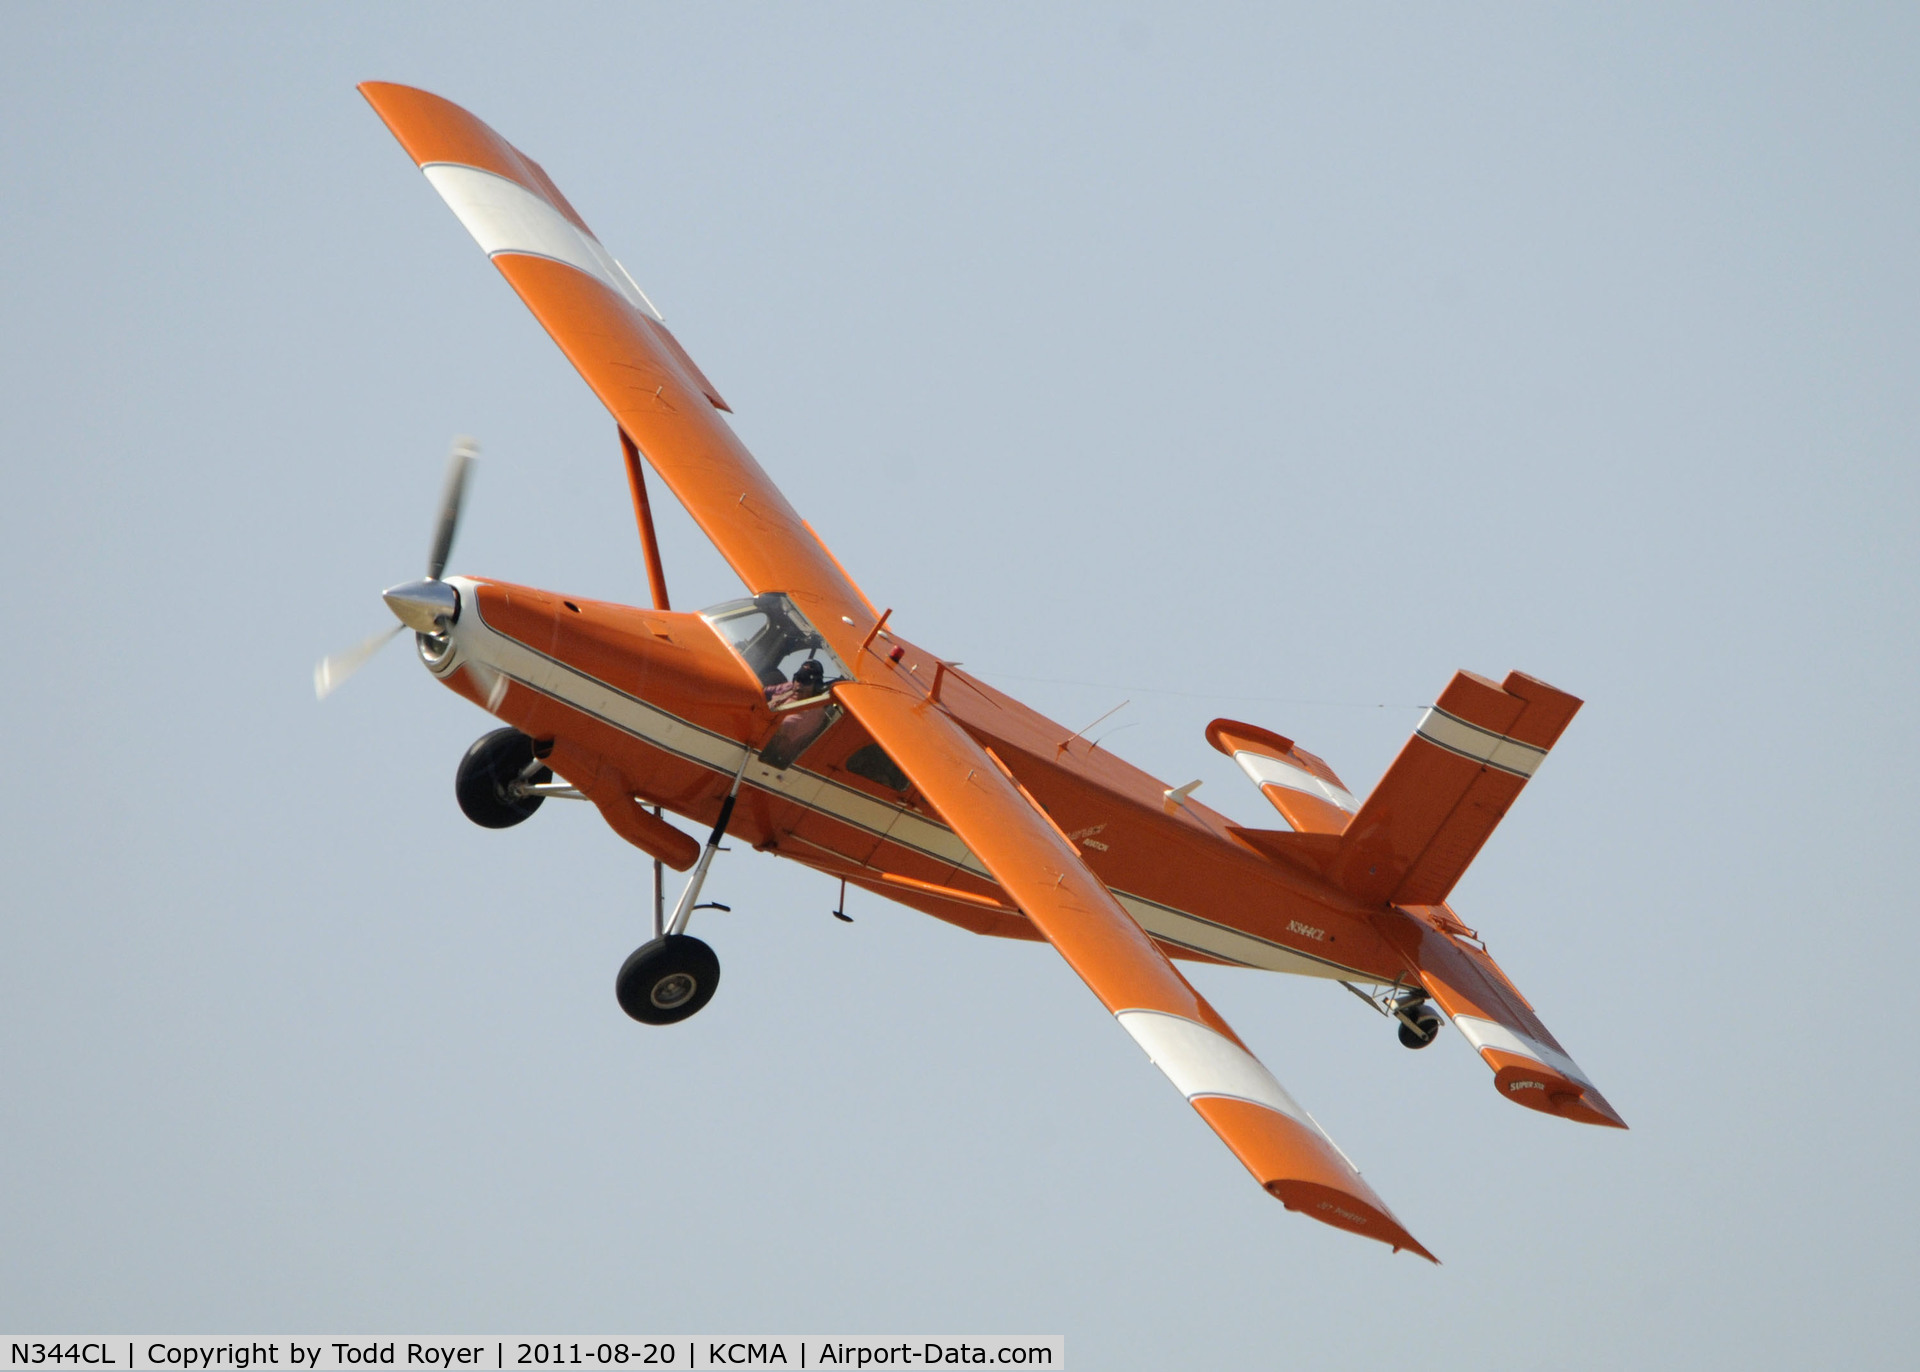 N344CL, 1968 Fairchild PC-6/C2-H2 Heli-Porter C/N 2019, Camarillo Airshow 2011